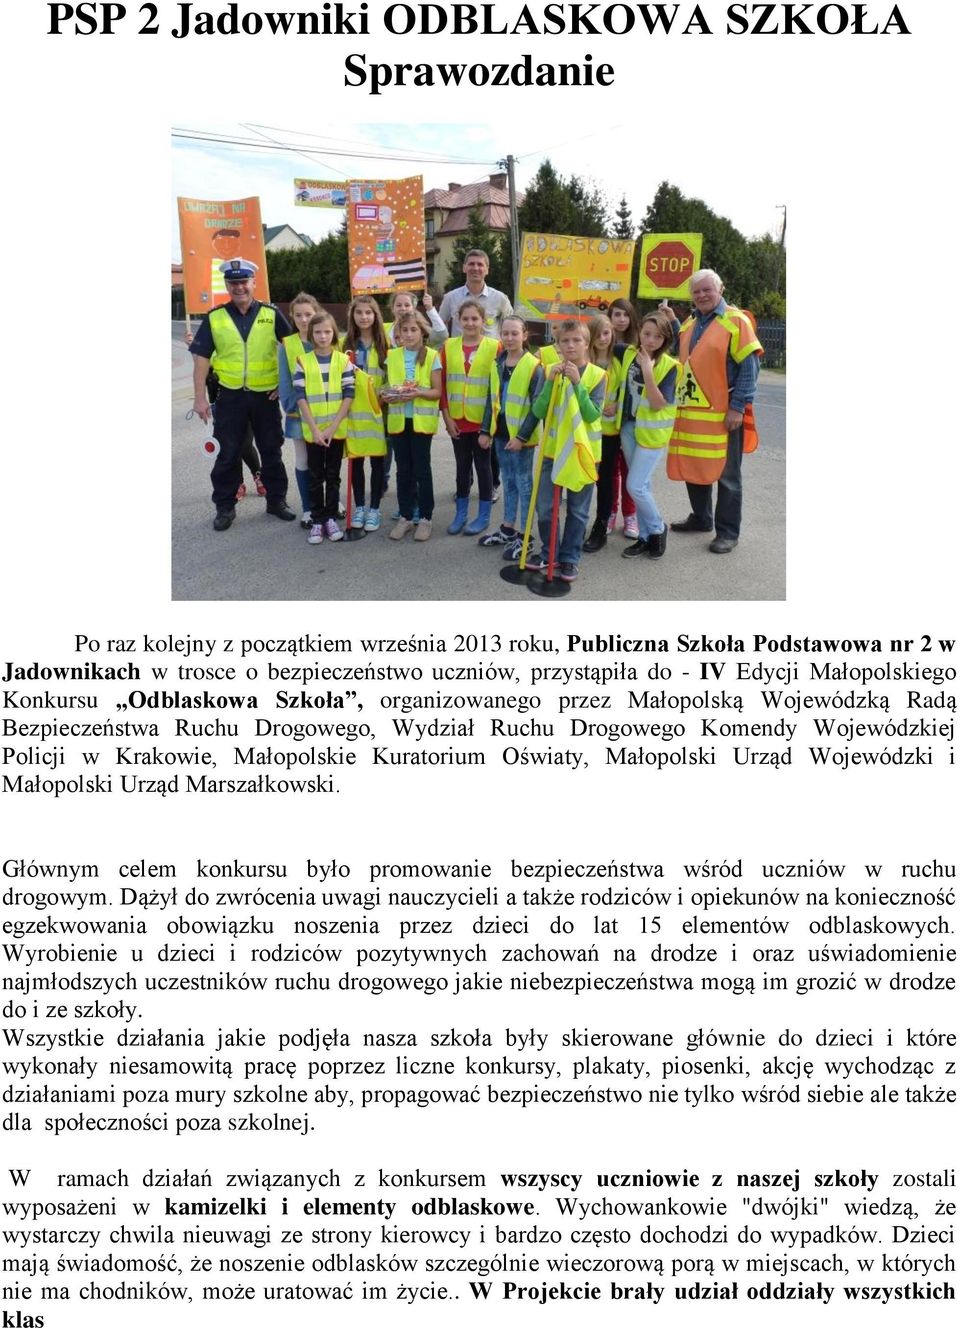 PSP 2 Jadowniki ODBLASKOWA SZKOŁA Sprawozdanie - PDF Free Download